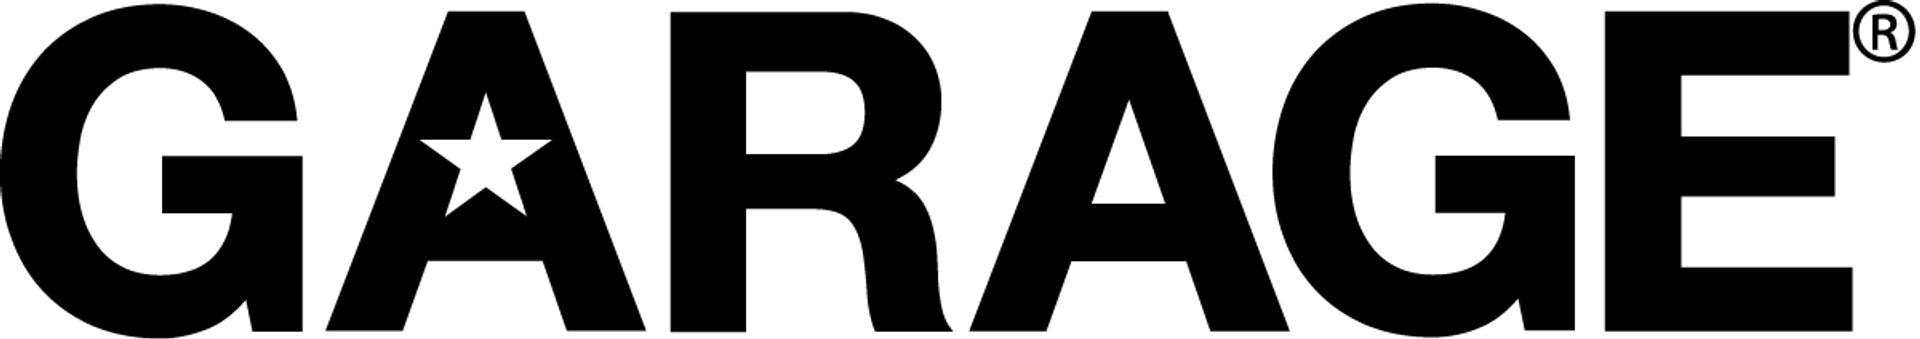 GARAGE logo de circulaire